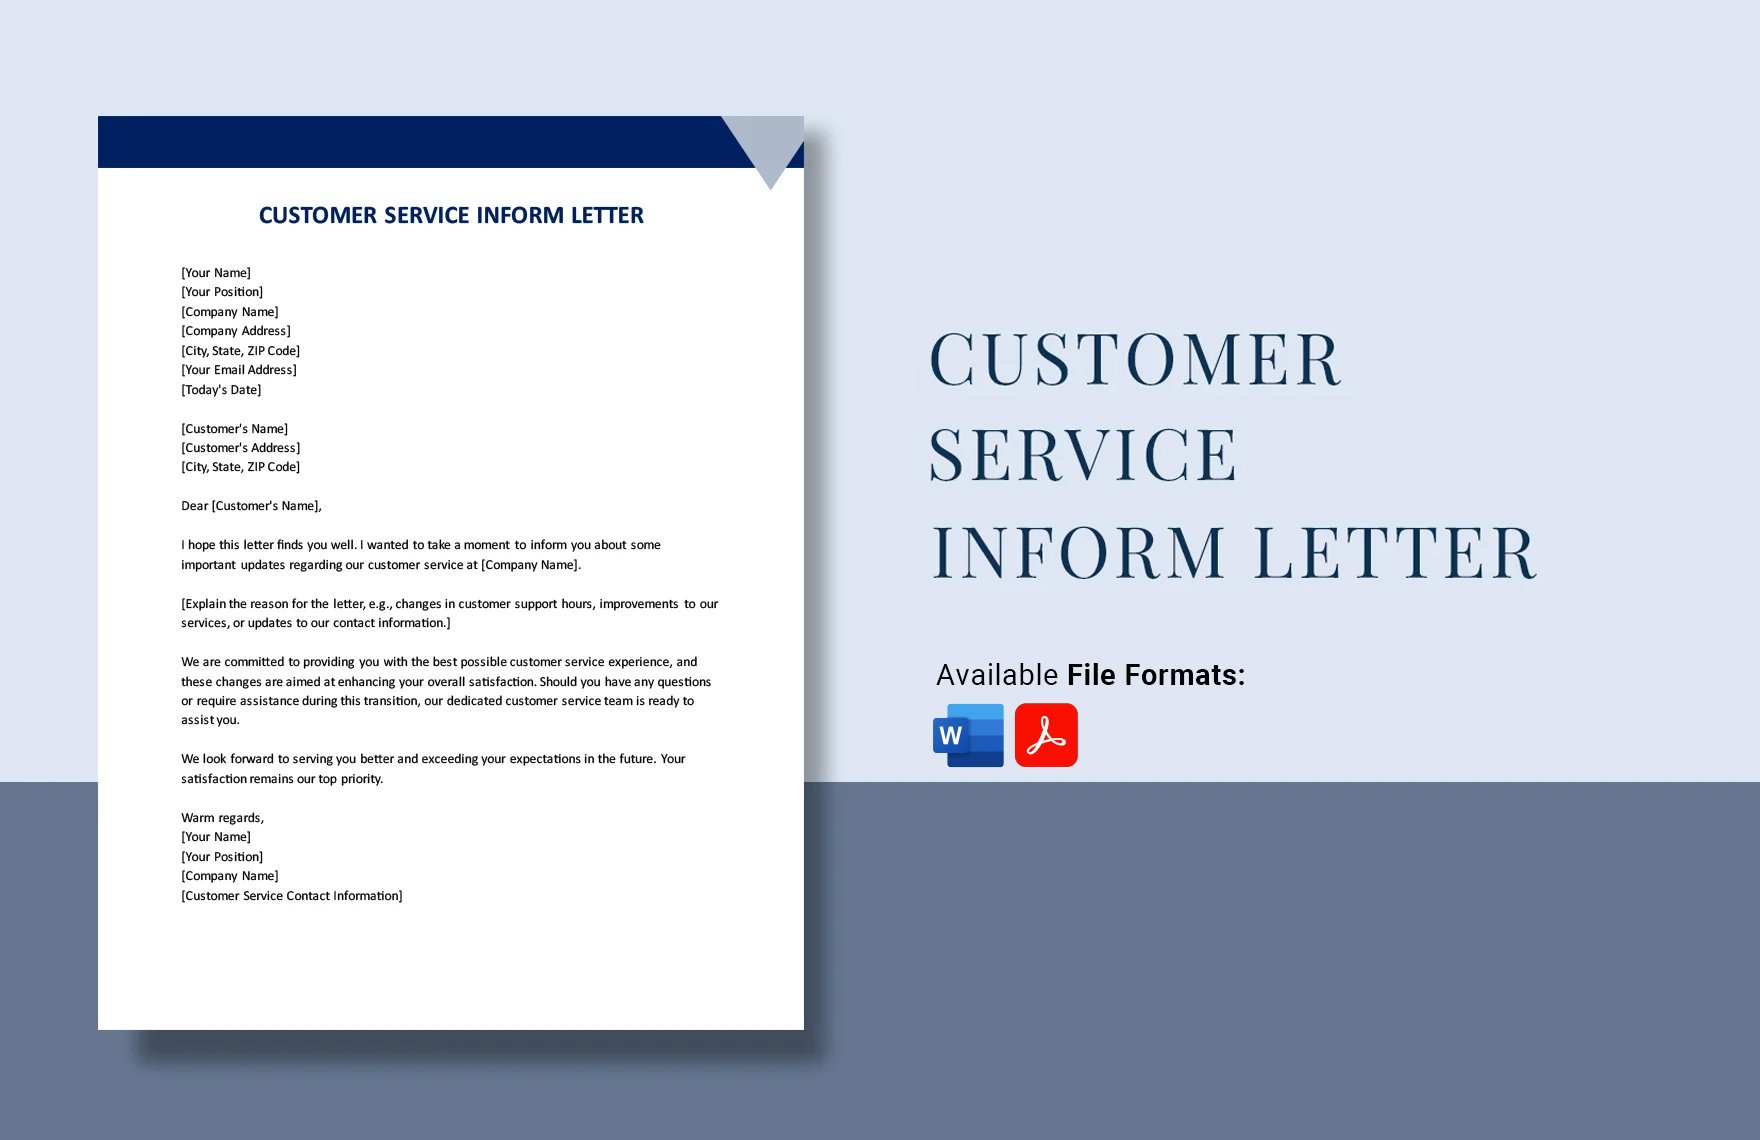 Customer Service Inform Letter